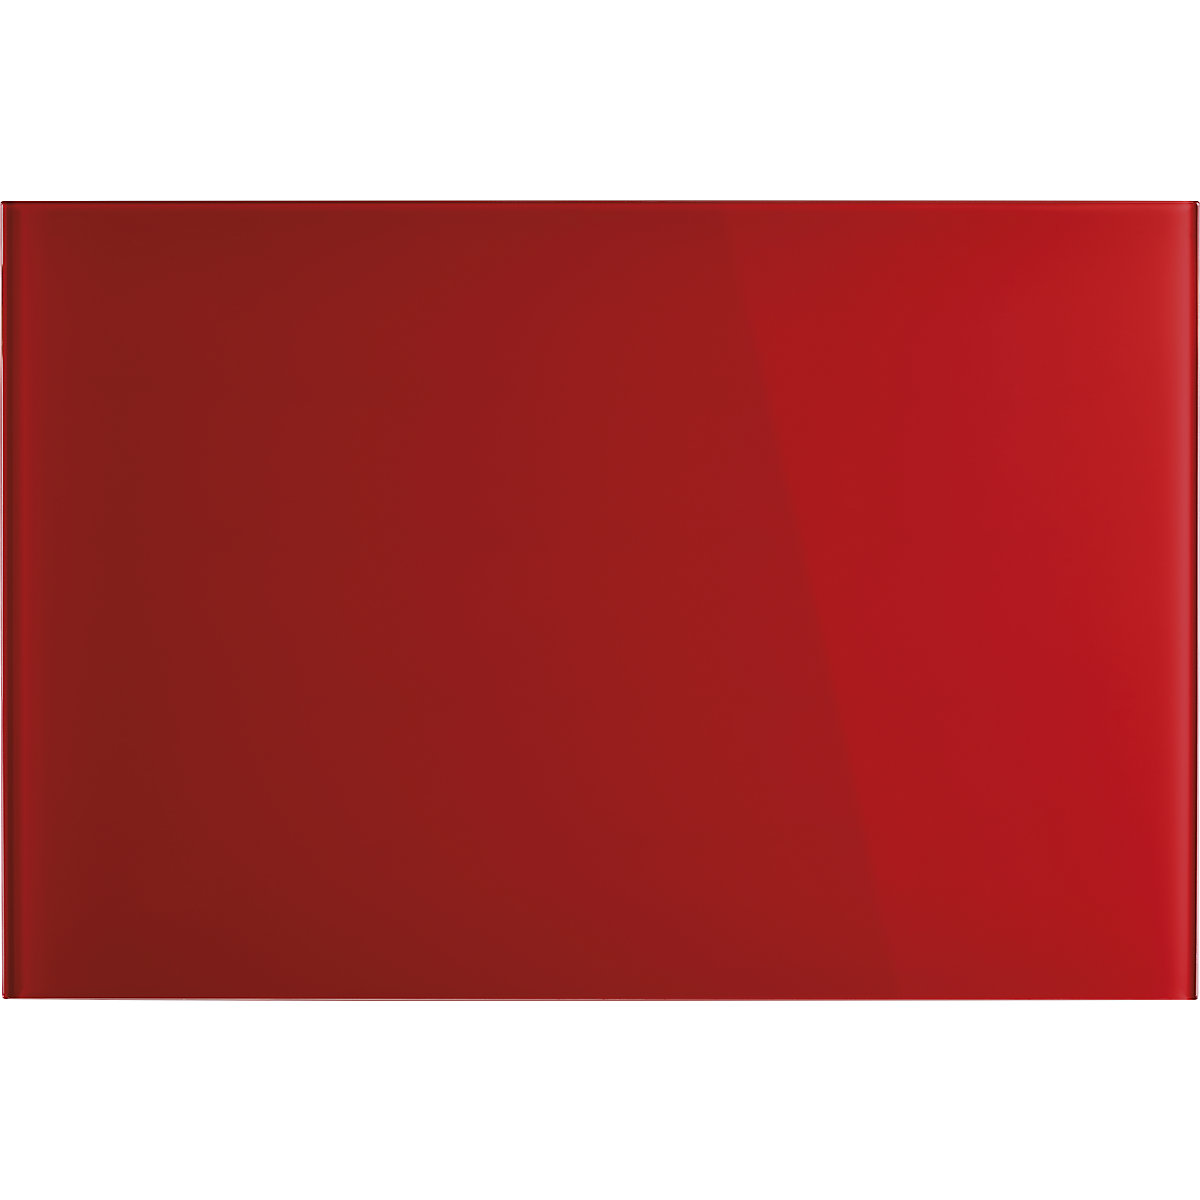 magnetoplan – Panel de cristal de diseño, magnético, A x H 600 x 400 mm, color rojo intenso